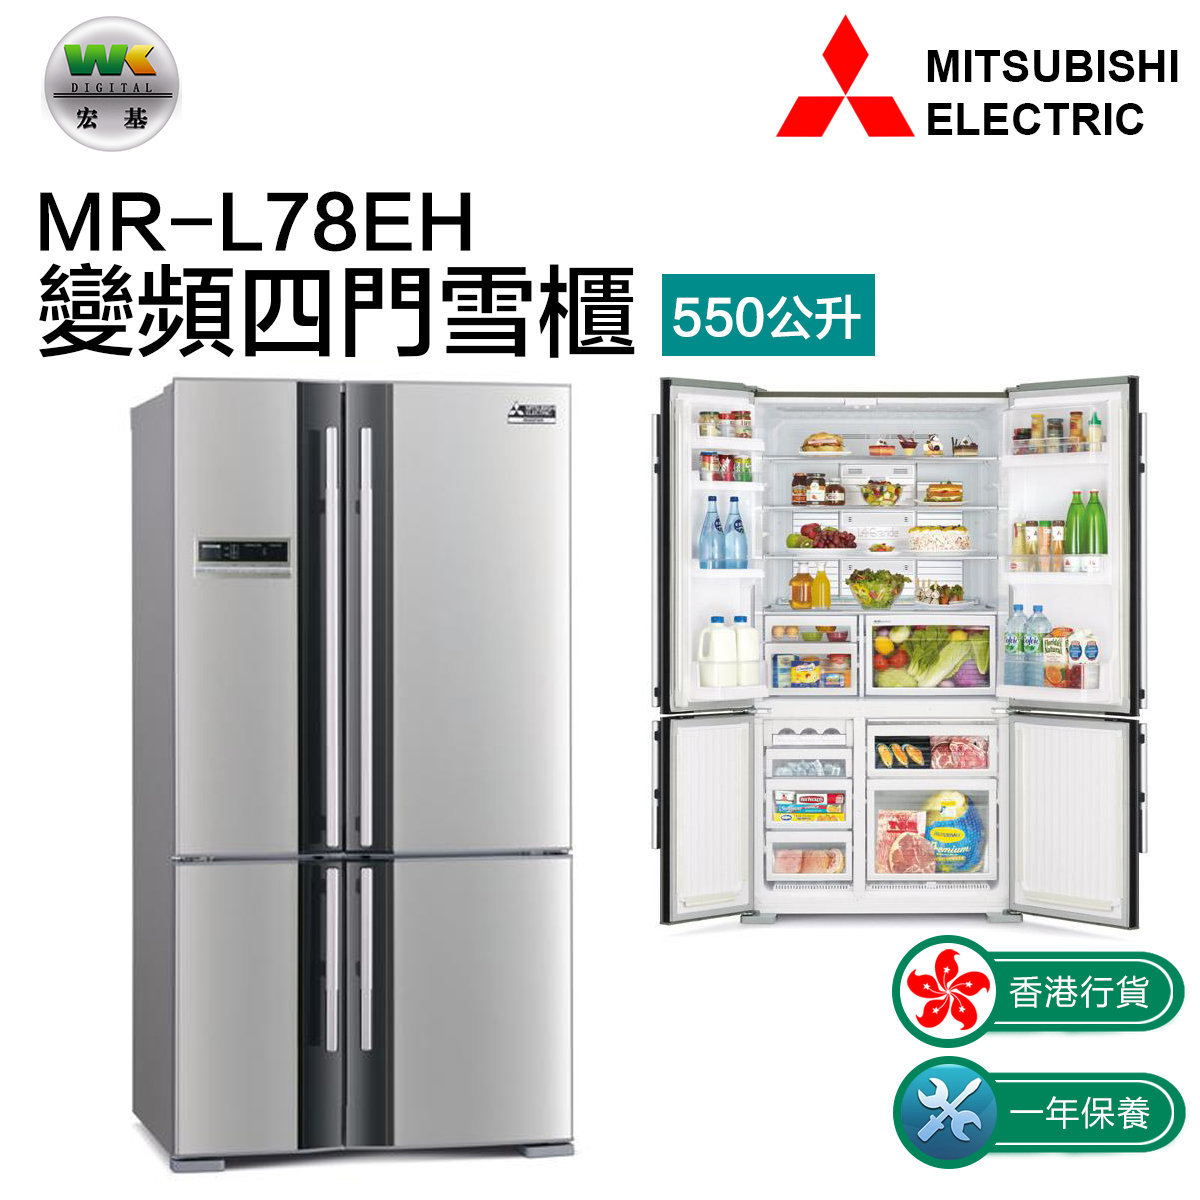 三菱| MR-L78EH 變頻四門雪櫃550L | HKTVmall 香港最大網購平台